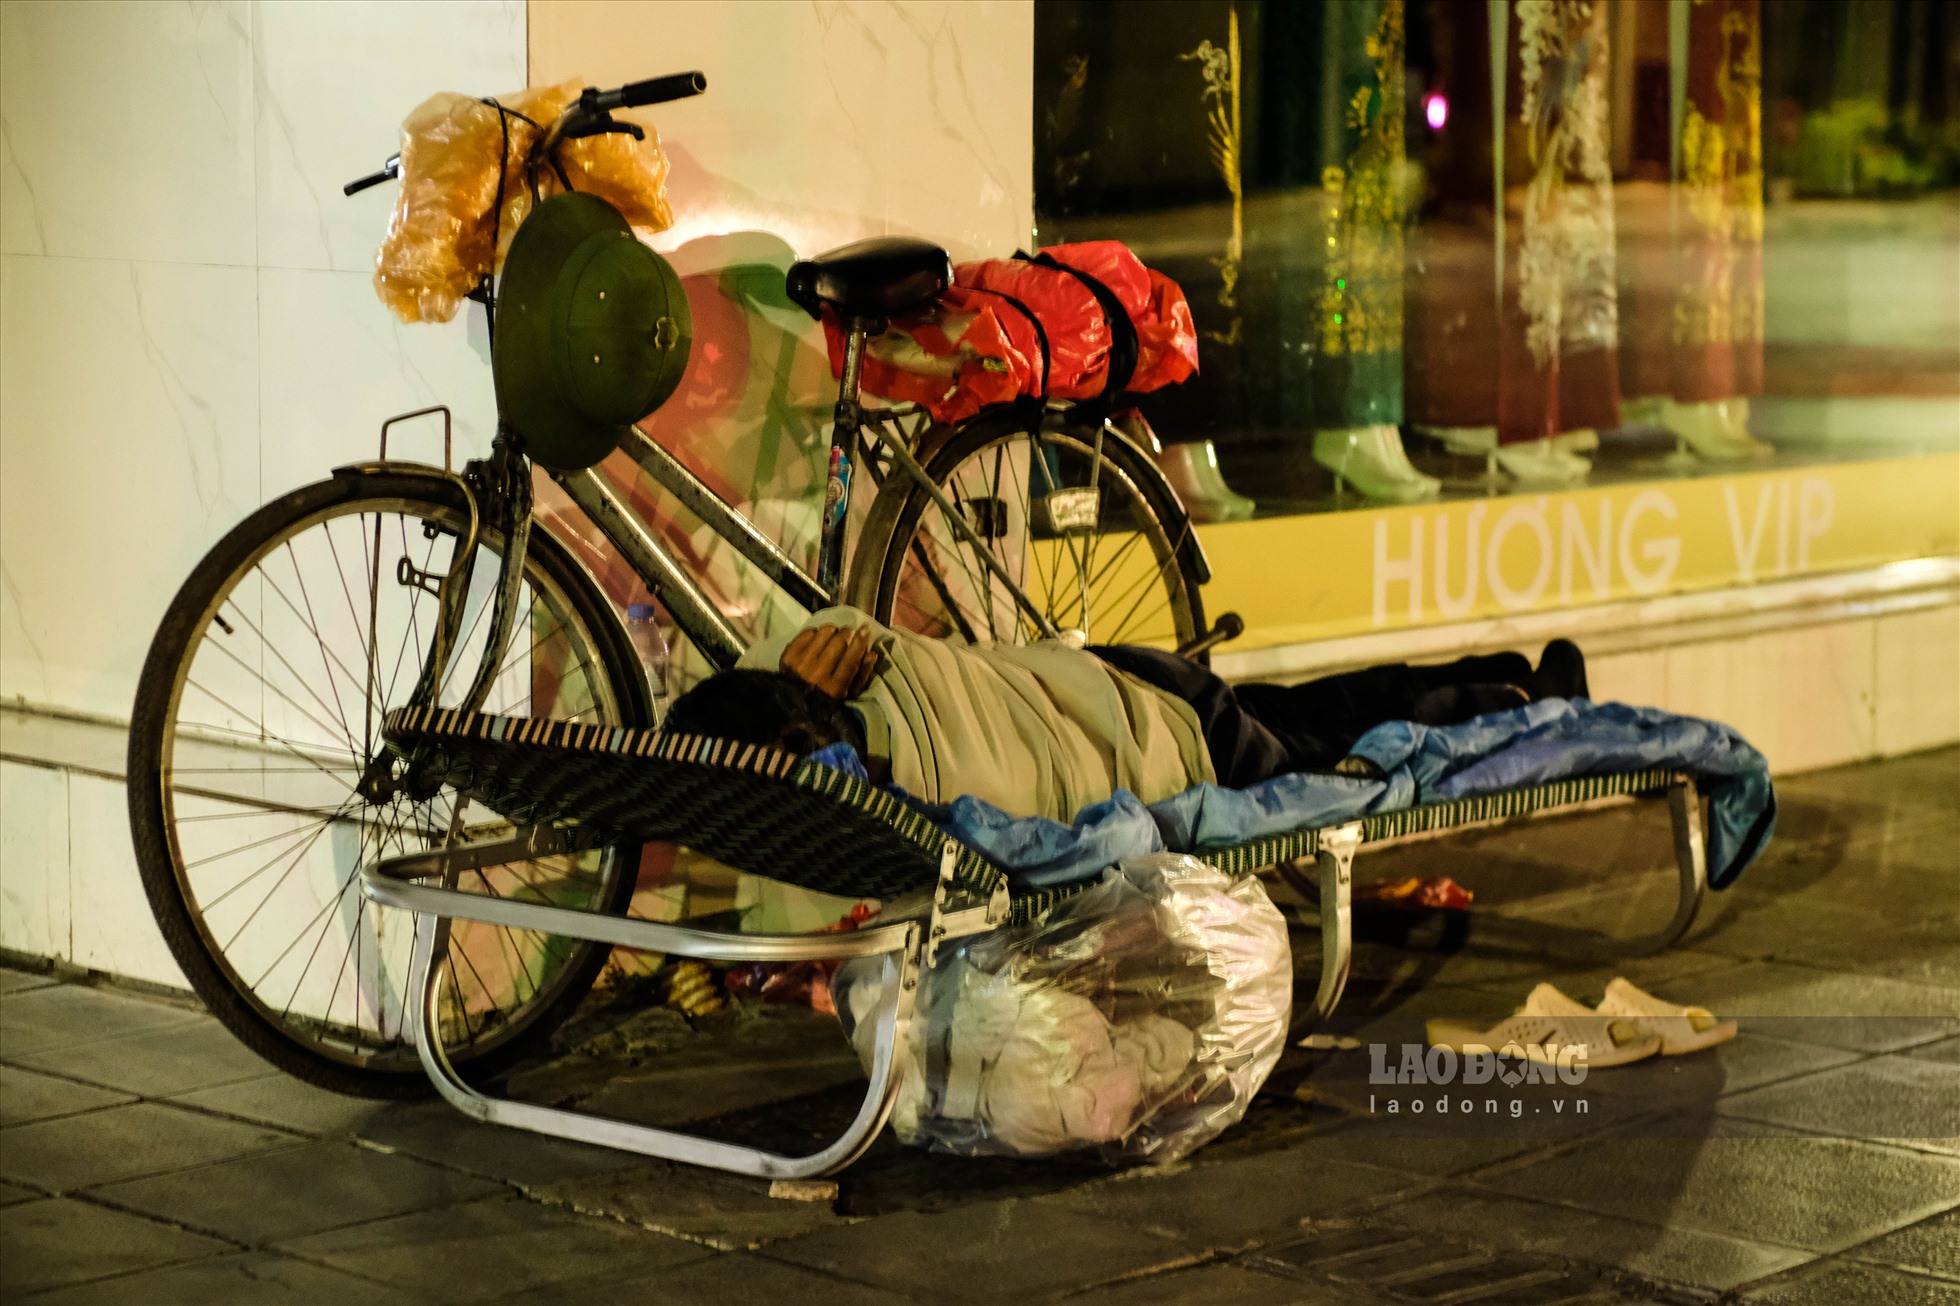 Người vô gia cư nằm ngủ ngon lành bên lề đường, trên người chỉ khoác một tấm chăn mỏng để chắn gió. Cuộc sống “màn trời chiếu đất” vốn đã khó khăn, nay lại càng chồng chất khó khăn vì giá rét.